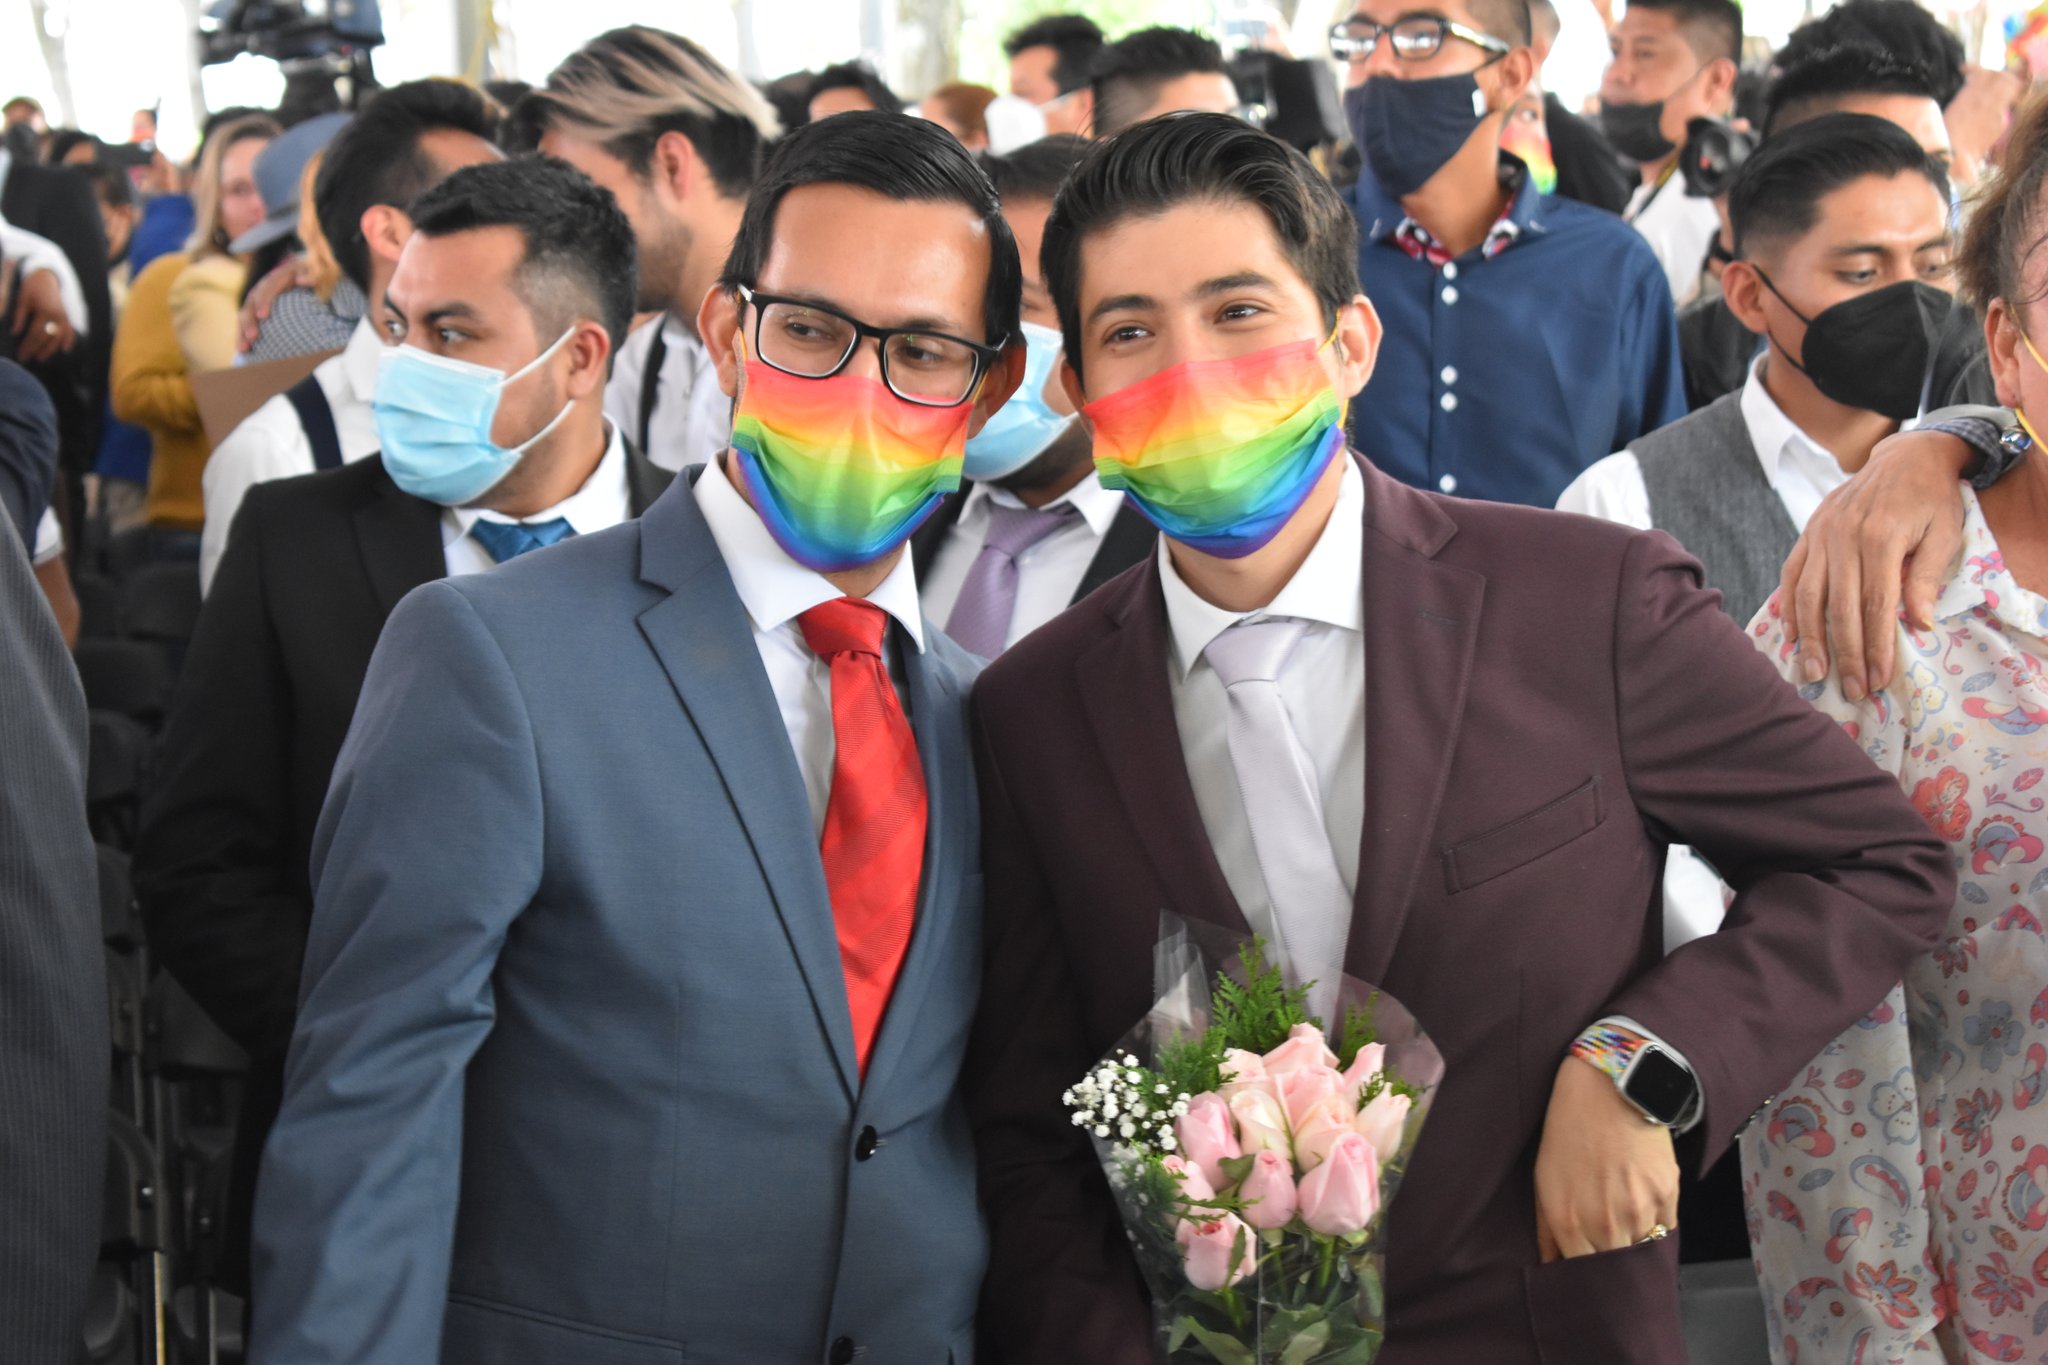 ¡Viva el amor y la diversidad! Se llevaron a cabo 121 matrimonios igualitarios